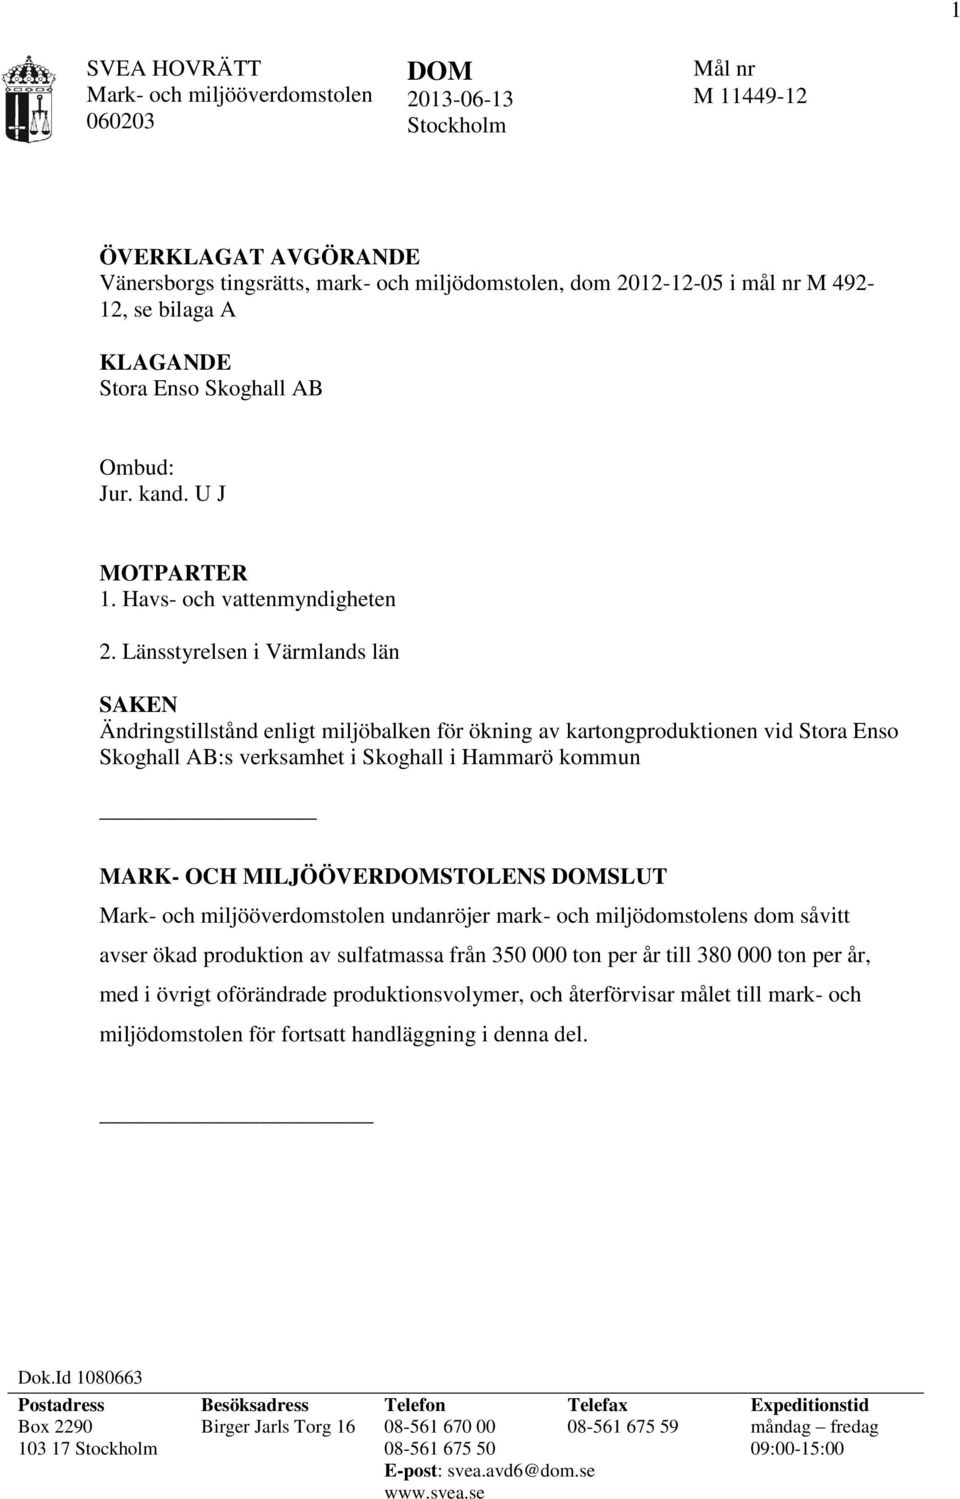 Länsstyrelsen i Värmlands län SAKEN Ändringstillstånd enligt miljöbalken för ökning av kartongproduktionen vid Stora Enso Skoghall AB:s verksamhet i Skoghall i Hammarö kommun MARK- OCH